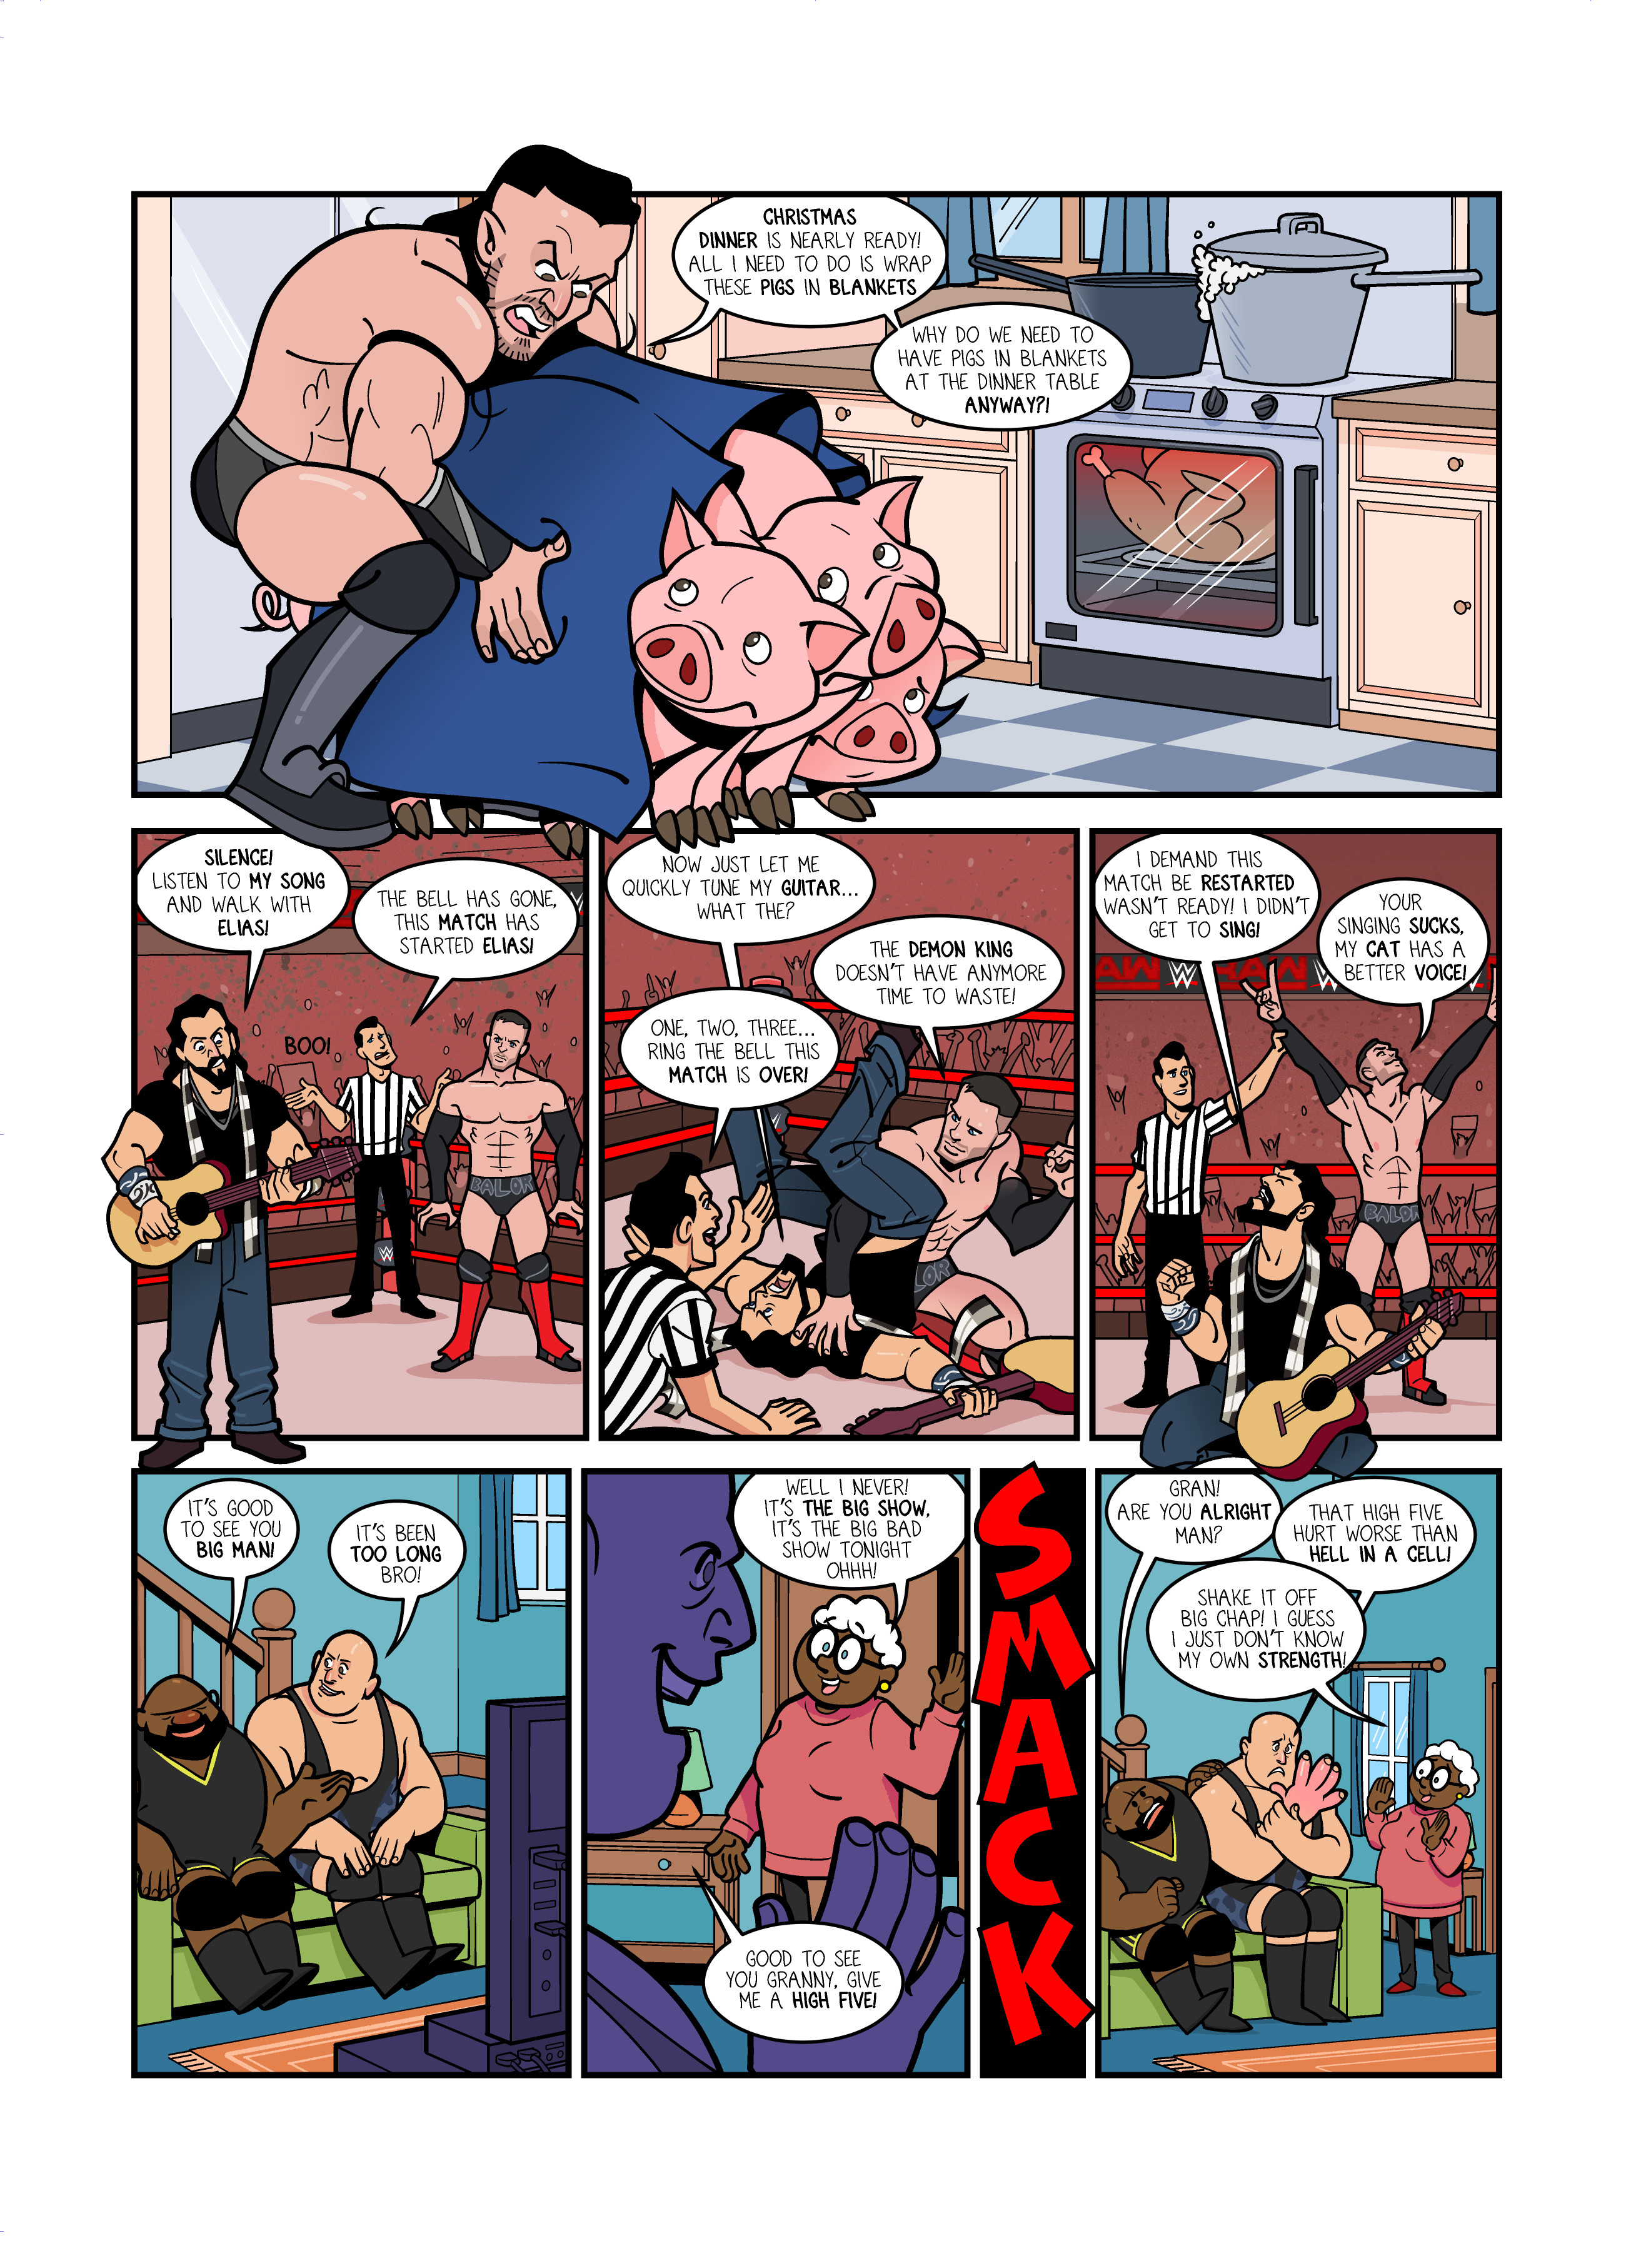 WWE RAW comic strips for WWE Kids Magazine #130